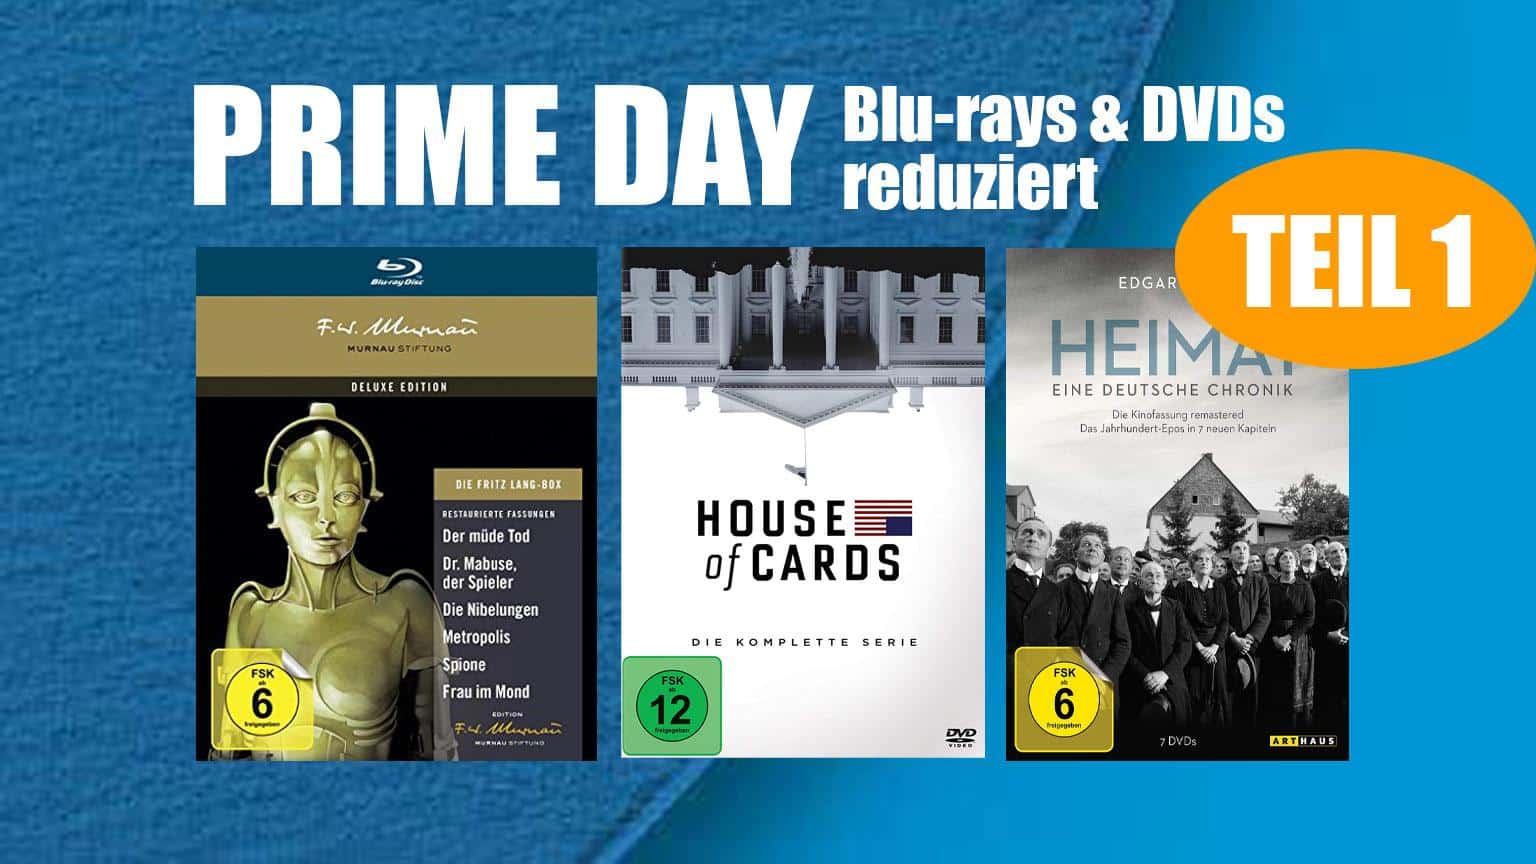 Prime Day 2020 Blu-ray & DVD reduziert Deal Amazon.de sparen kaufen shop Artikelbild Teil 1